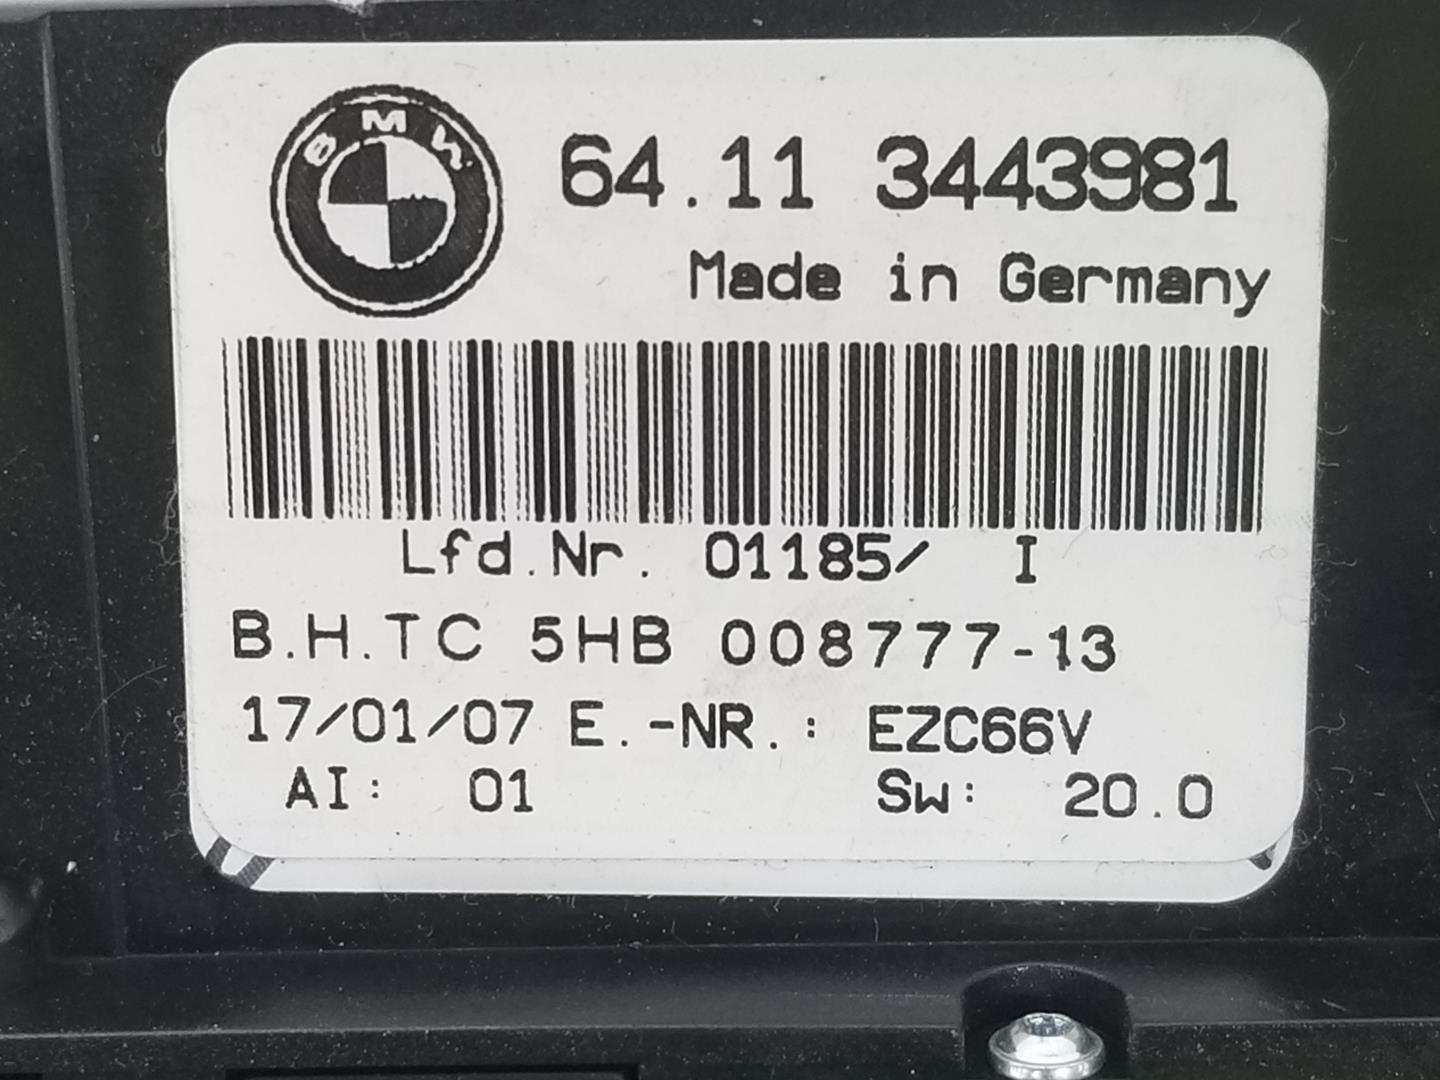 BMW X3 E83 (2003-2010) Klimakontrollenhet 64113443981, 64113443981 19773216